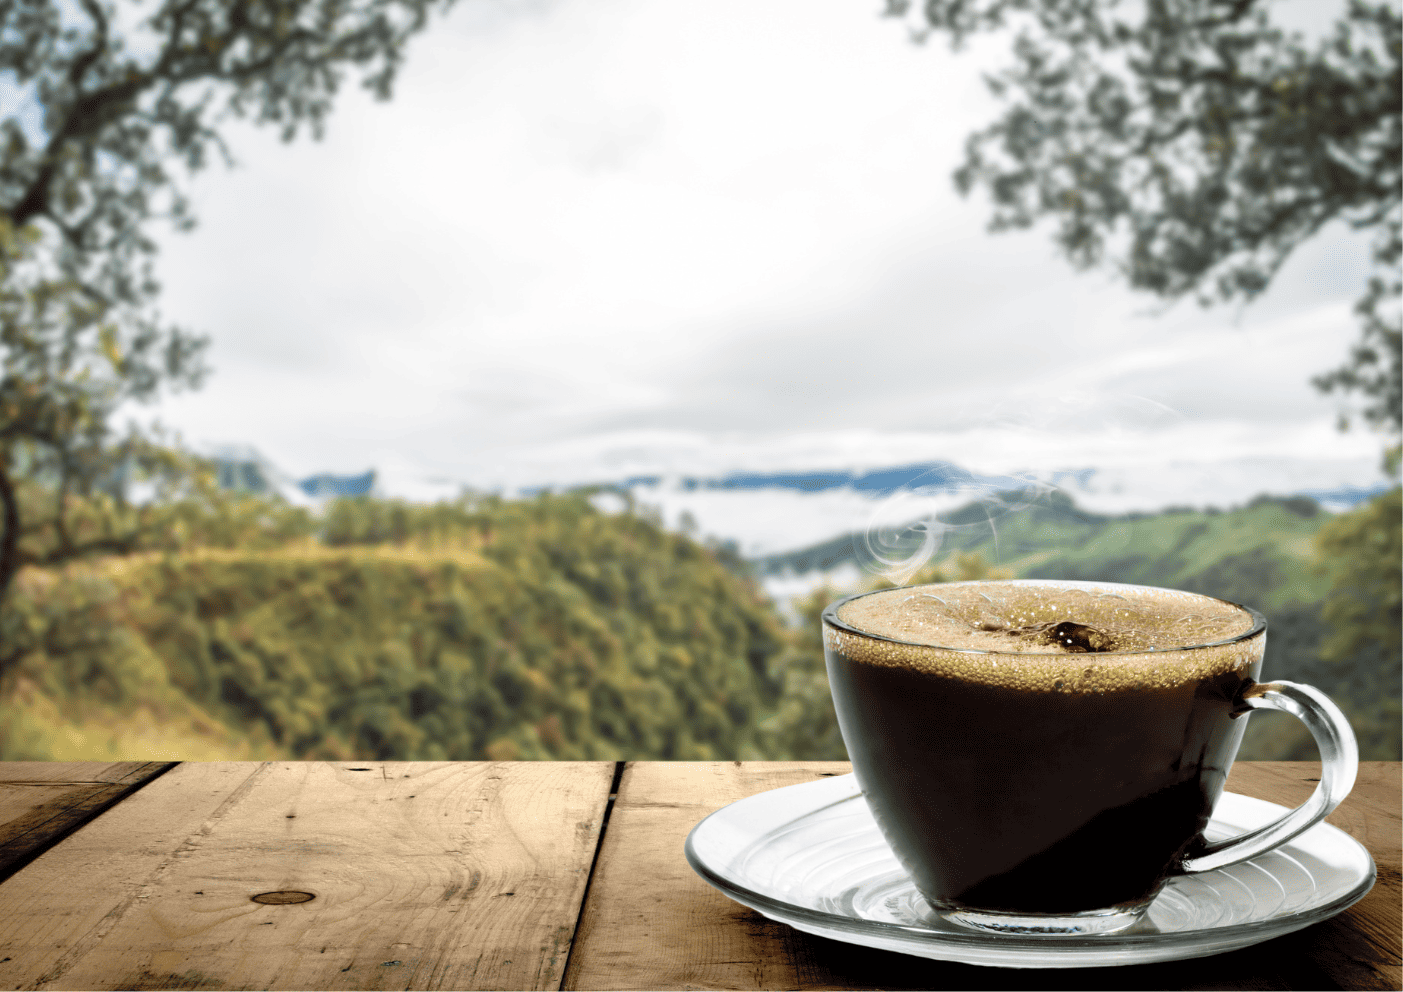 Kiedy picie kawy stało się modą? – Historyczne spojrzenie na kawę jako globalny fenomen